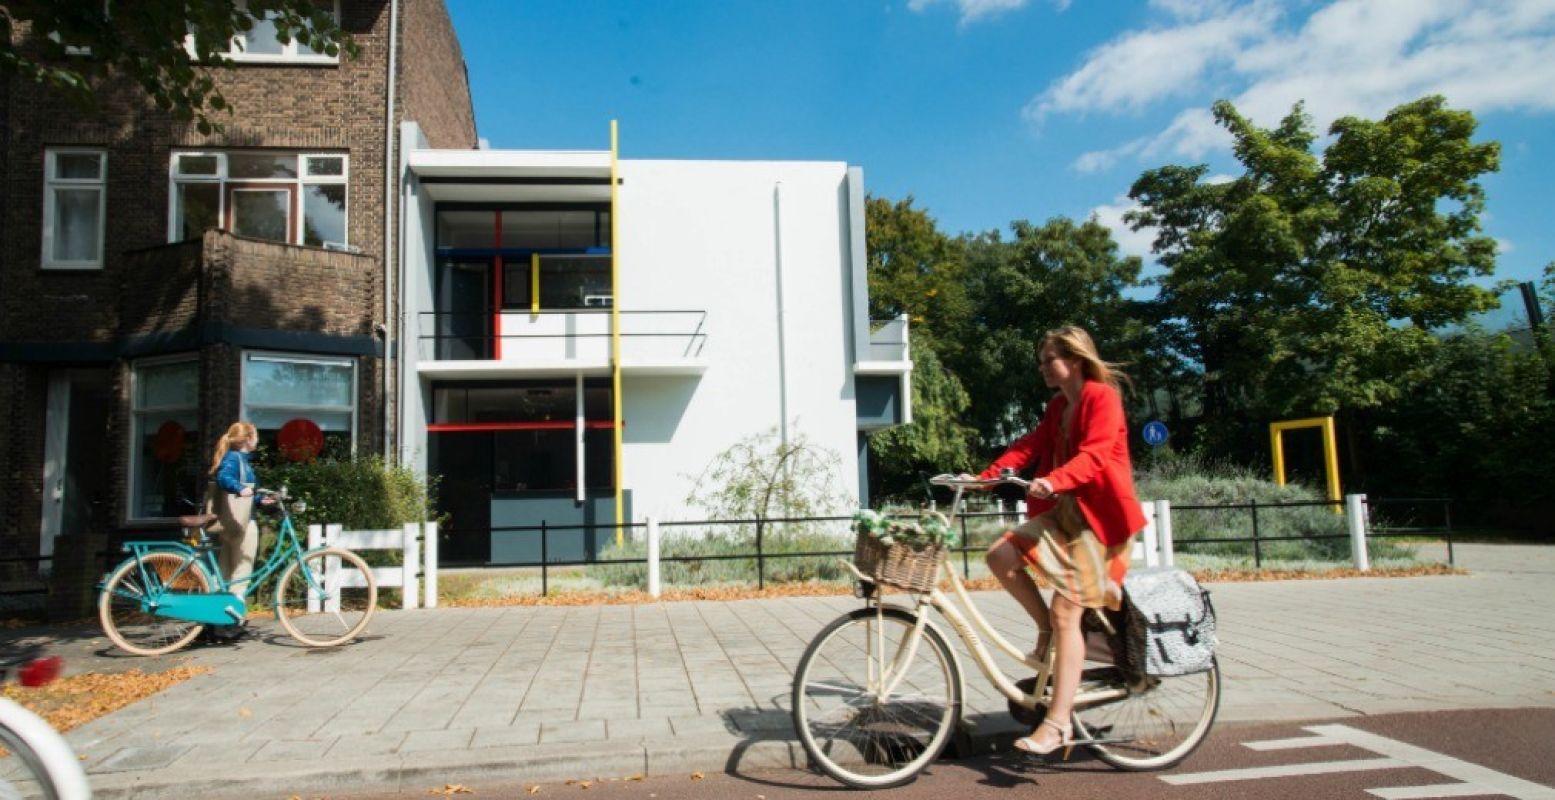 Het Rietveld Schröderhuis in Utrecht. Foto: NBTC Holland Marketing